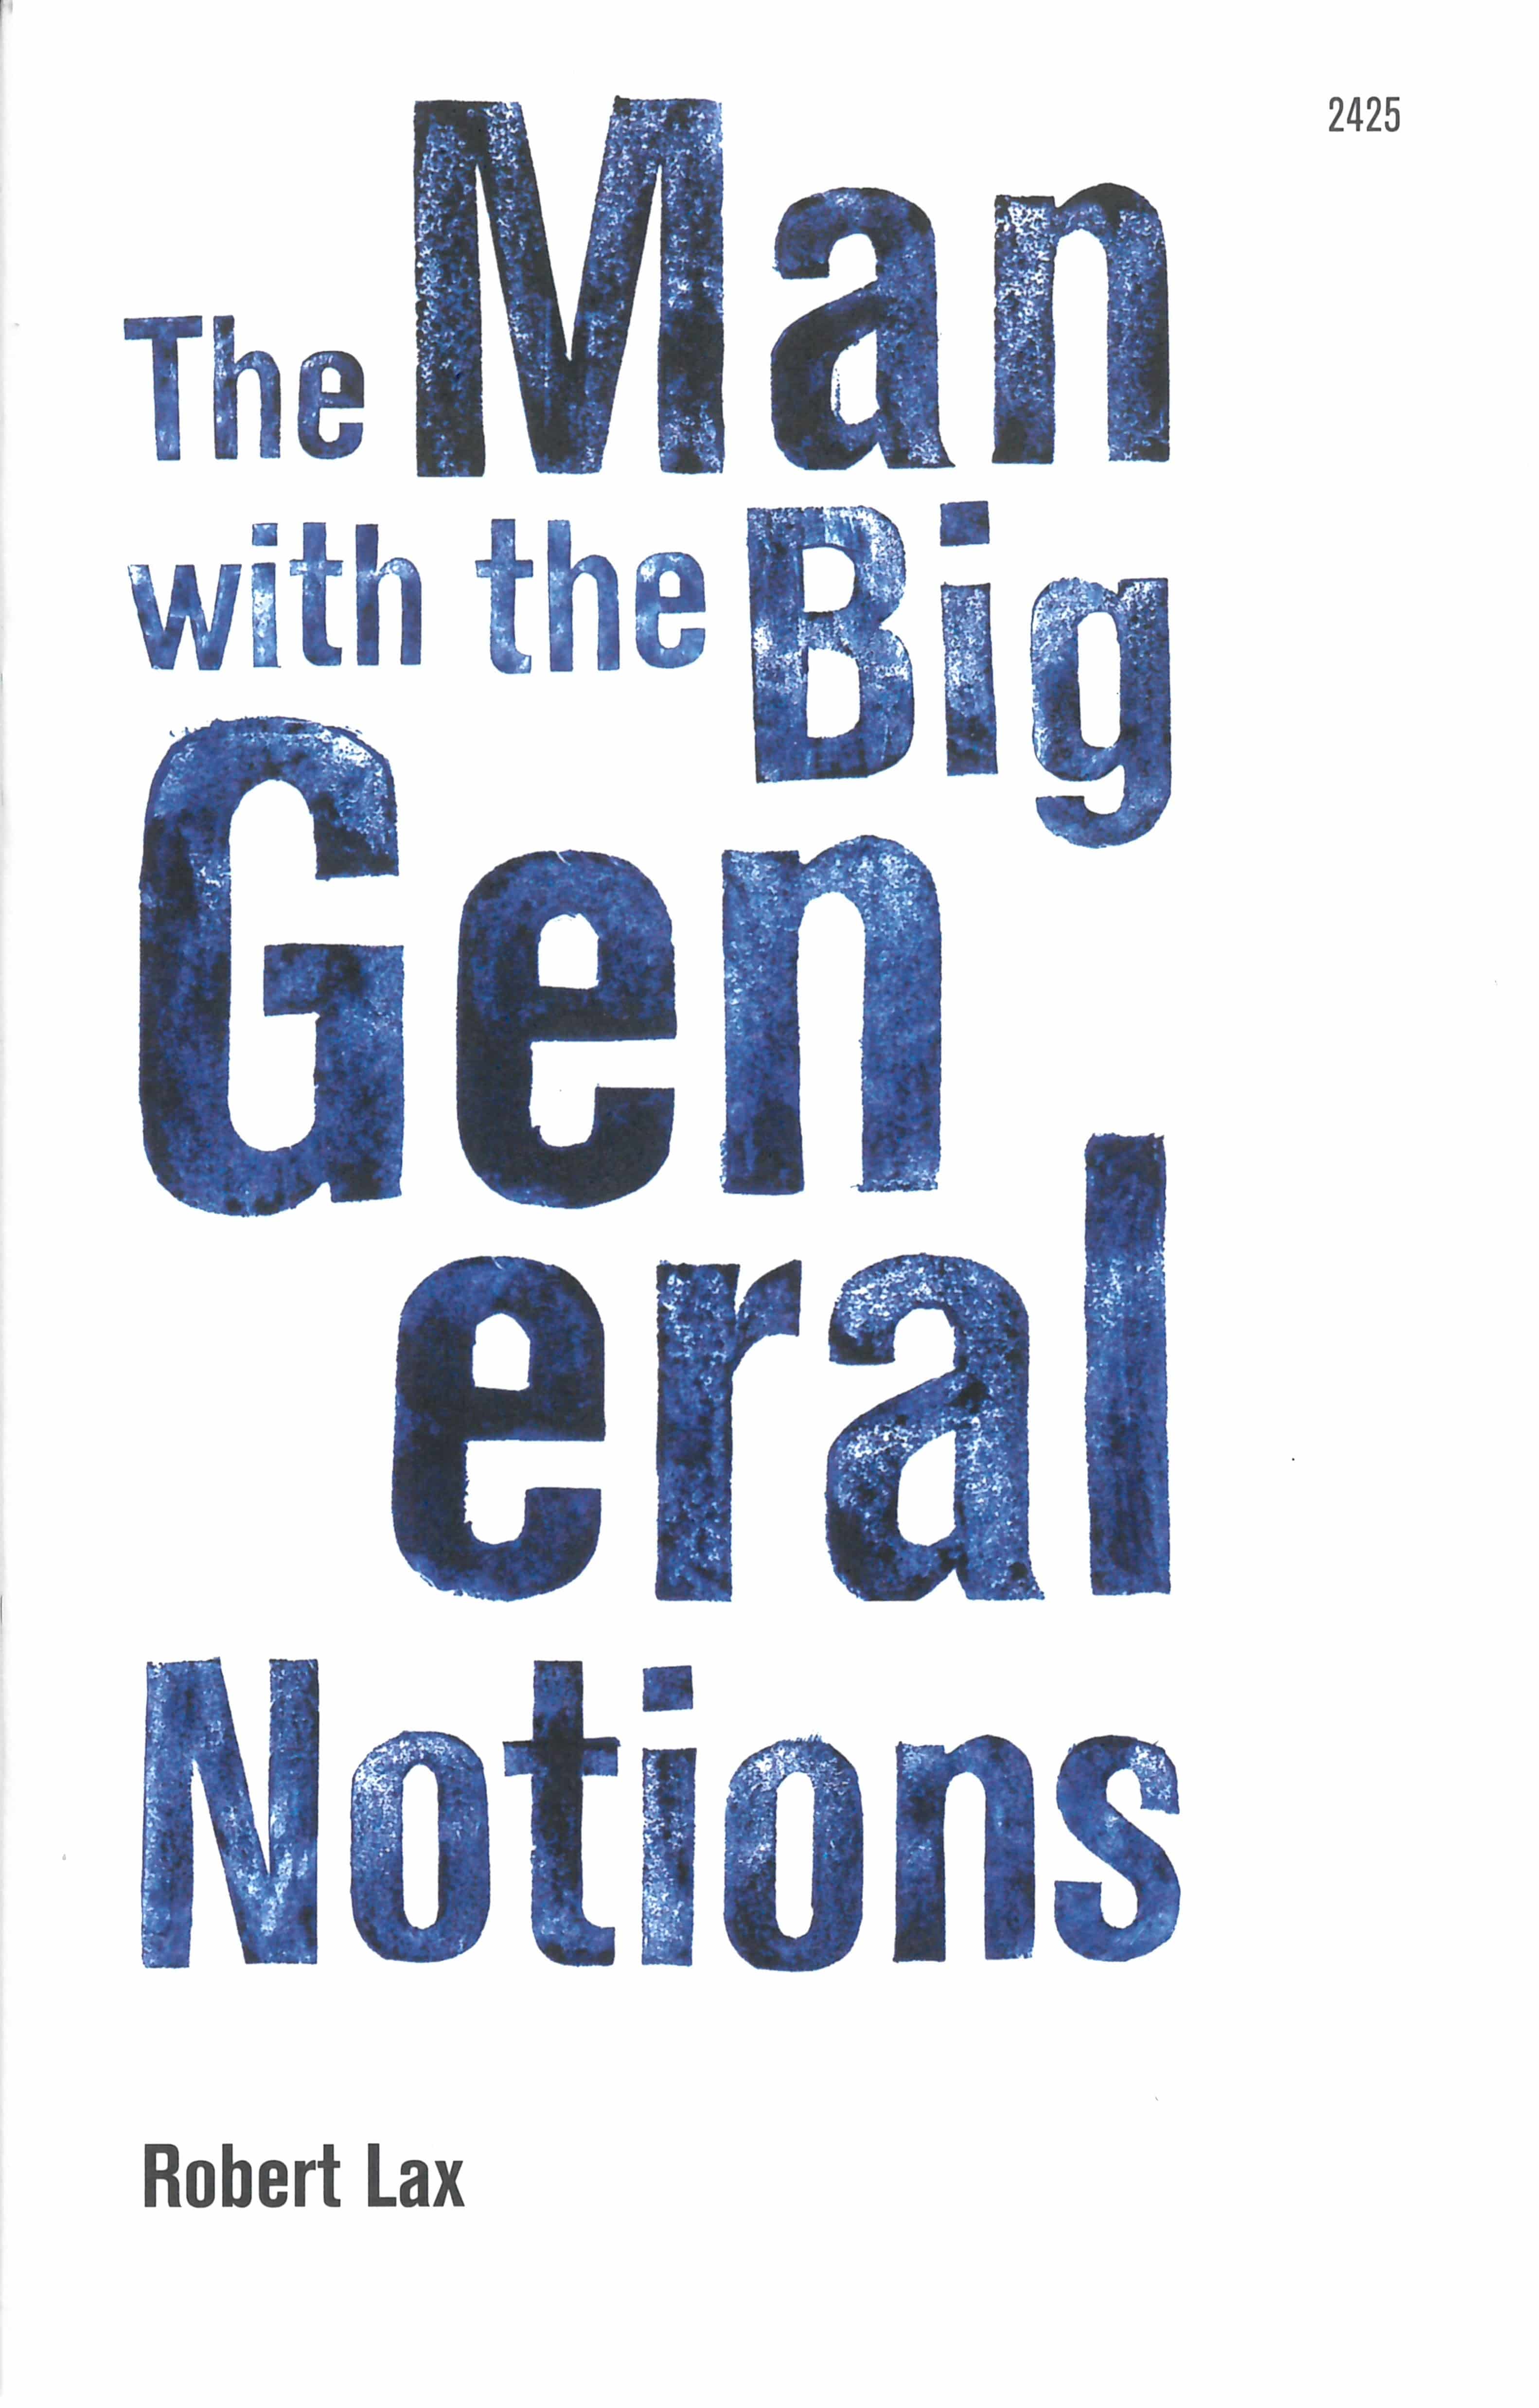 The Man with the Big General Notions, ein Kinderbuch von Robert Lax, Illustration von Camille Perrochet, SJW Verlag, Philosophie